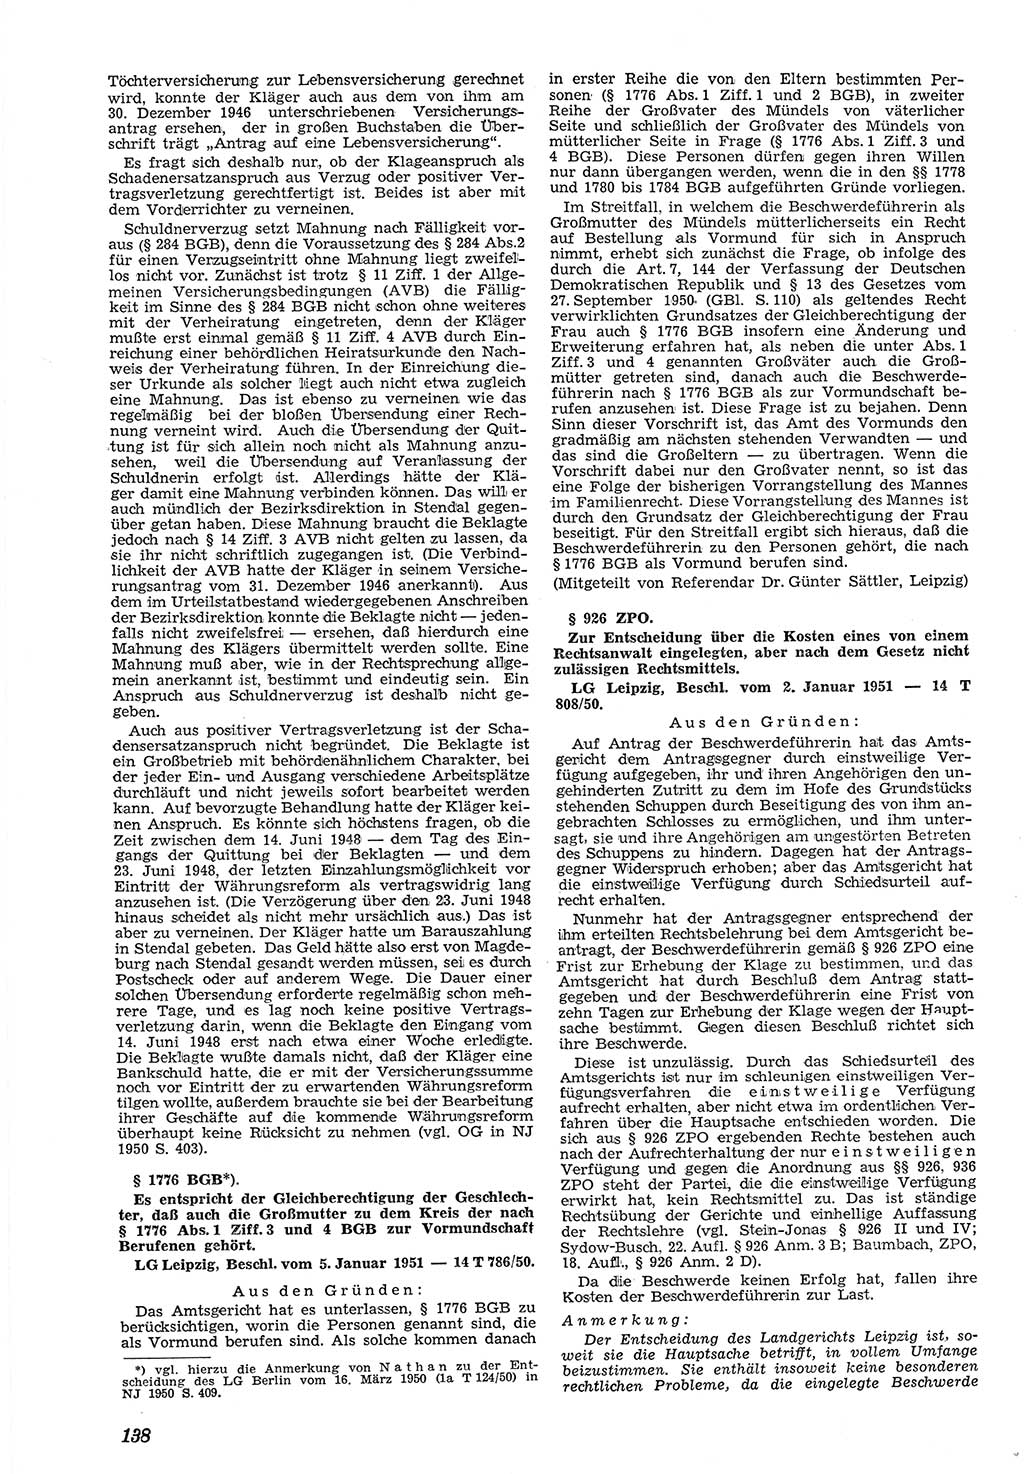 Neue Justiz (NJ), Zeitschrift für Recht und Rechtswissenschaft [Deutsche Demokratische Republik (DDR)], 5. Jahrgang 1951, Seite 138 (NJ DDR 1951, S. 138)